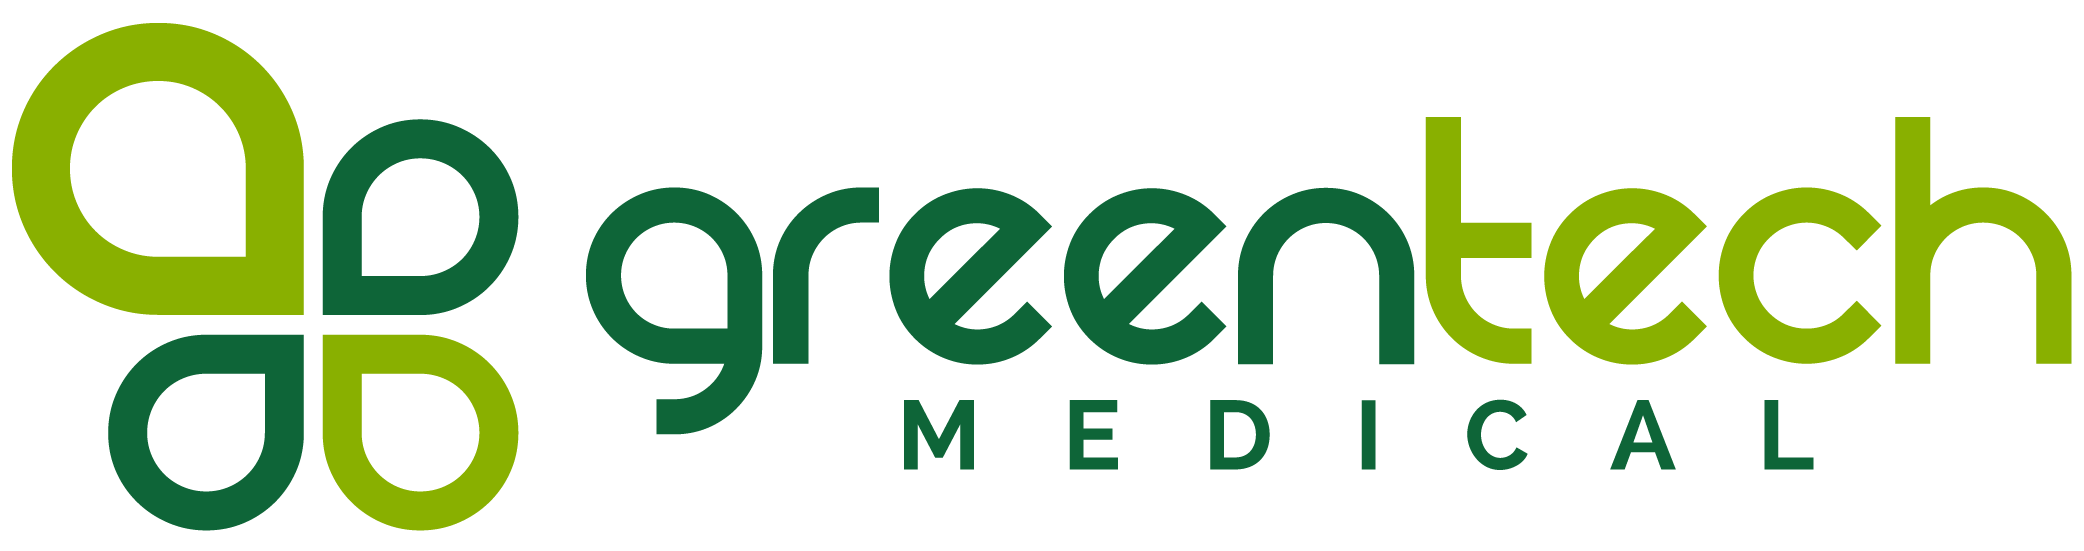 GreenTech Medical